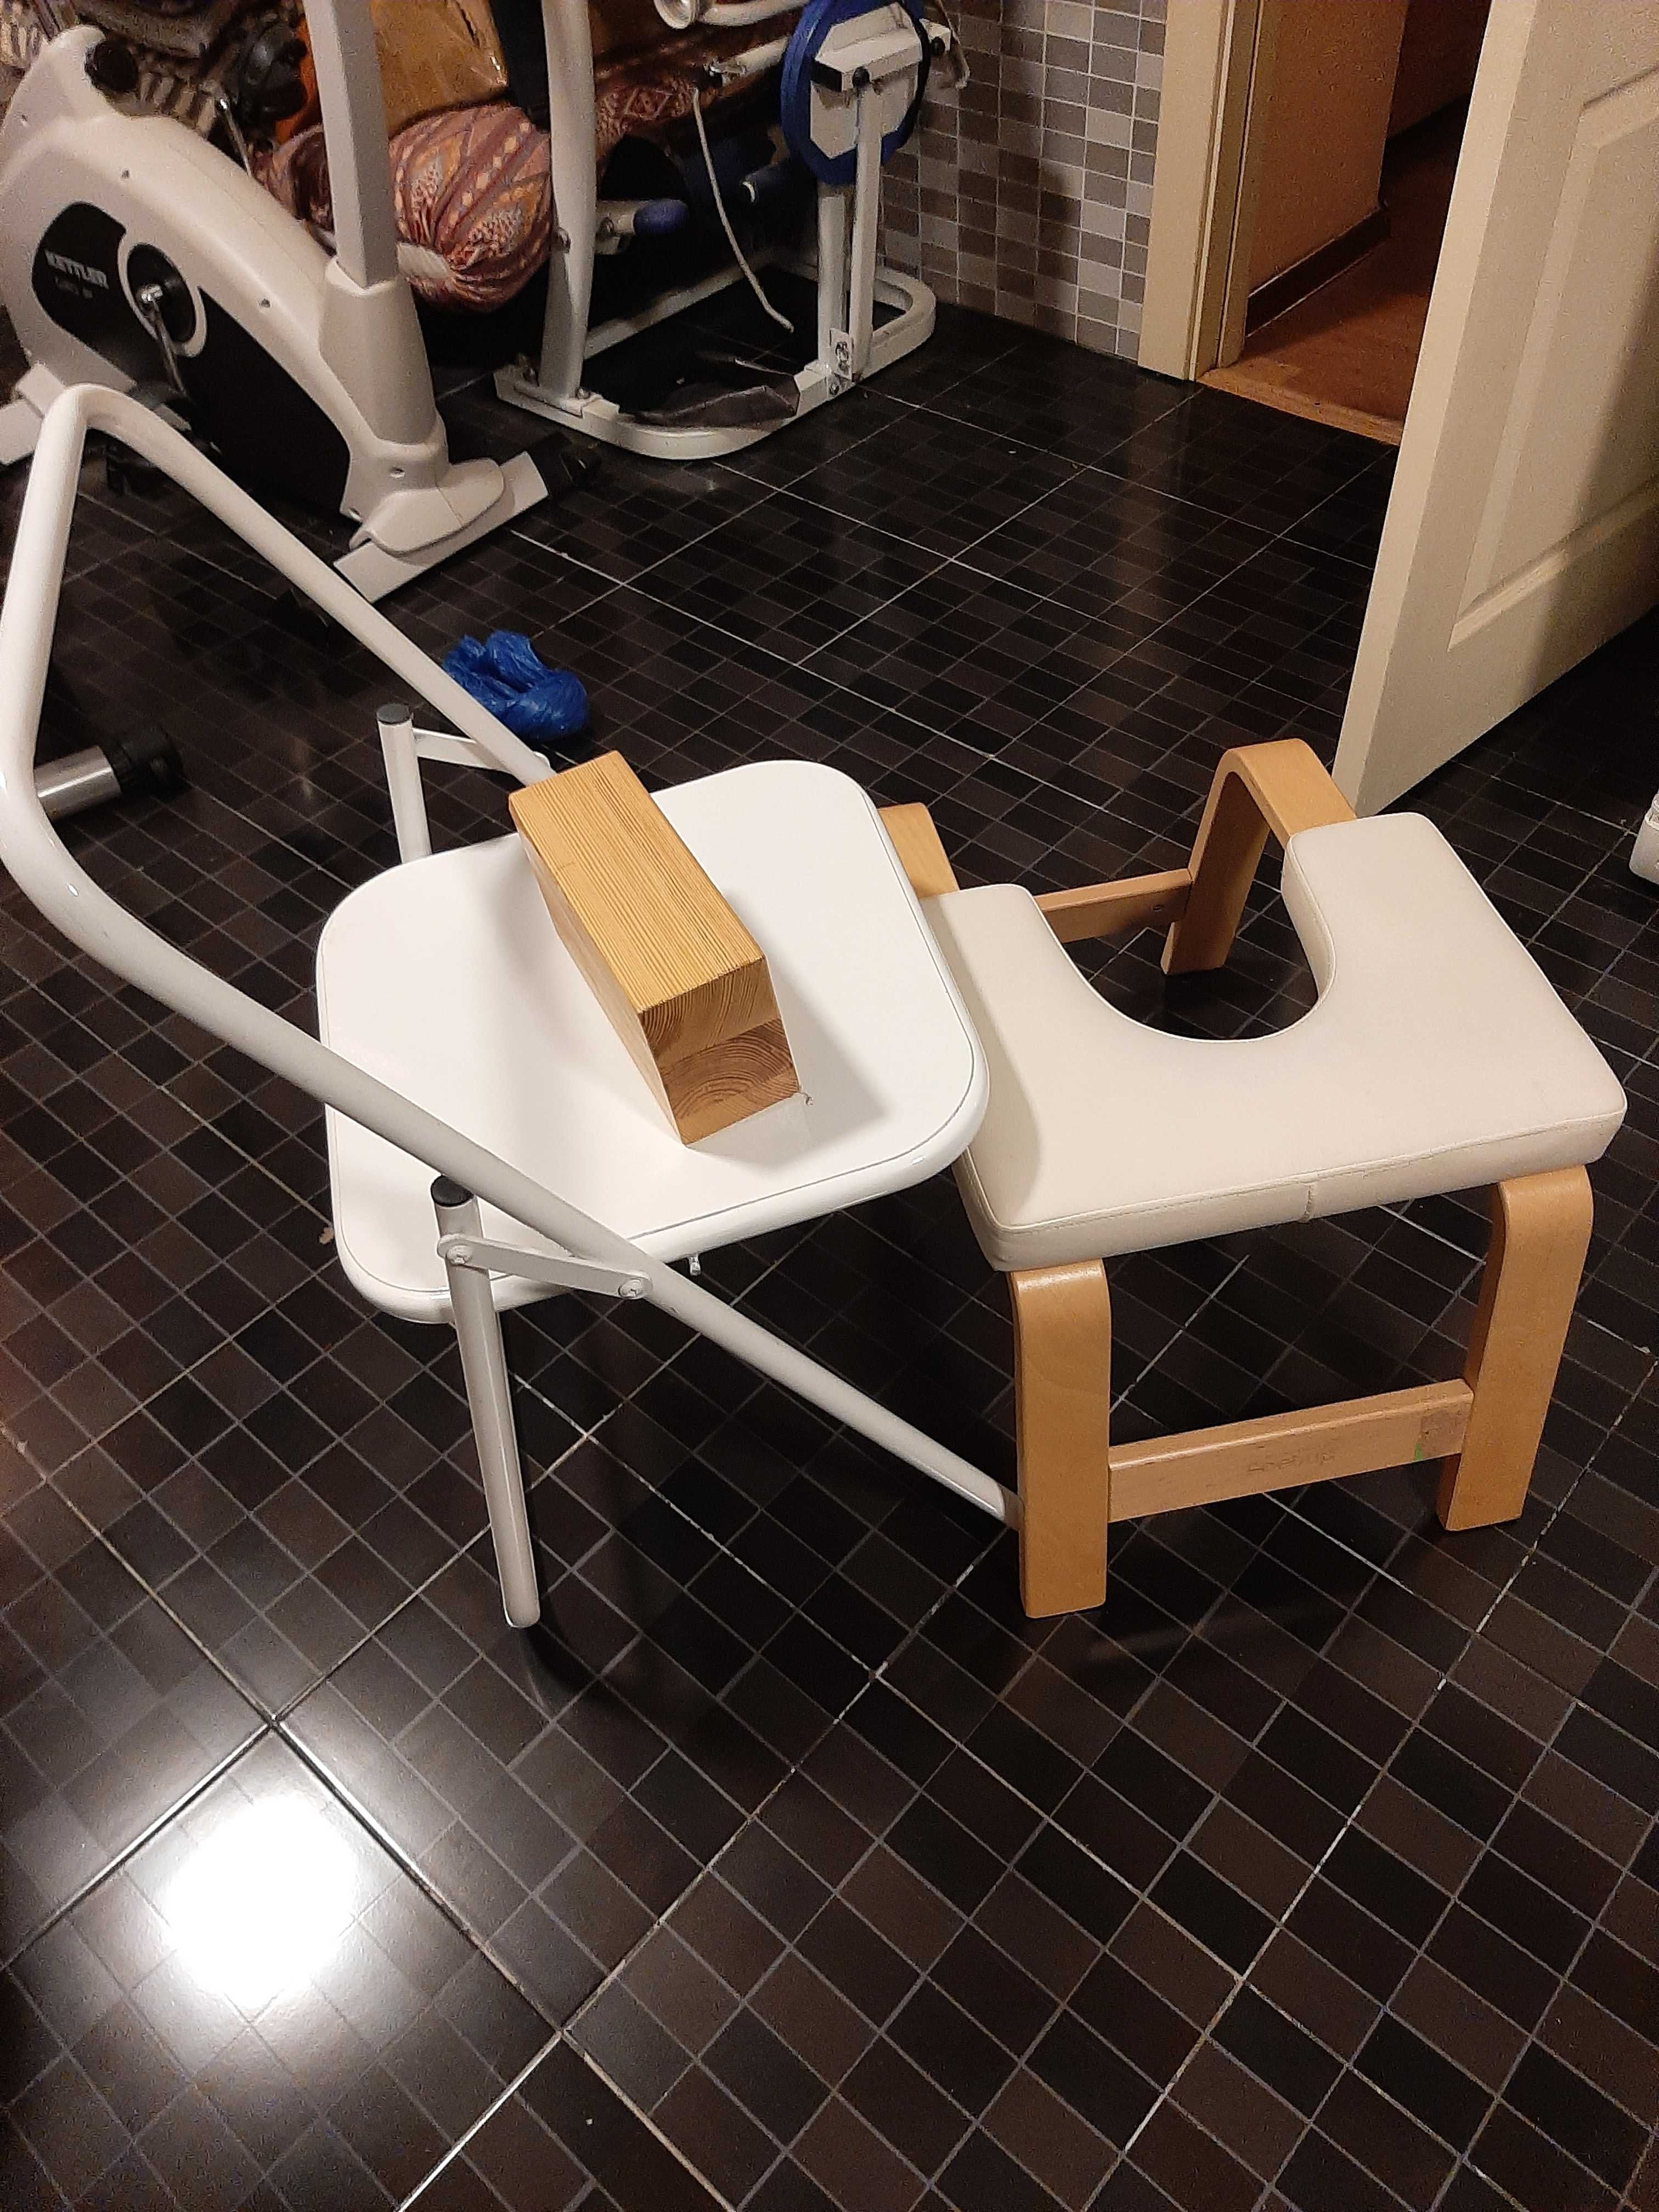 Оборудование для йоги, пледы, стулья,